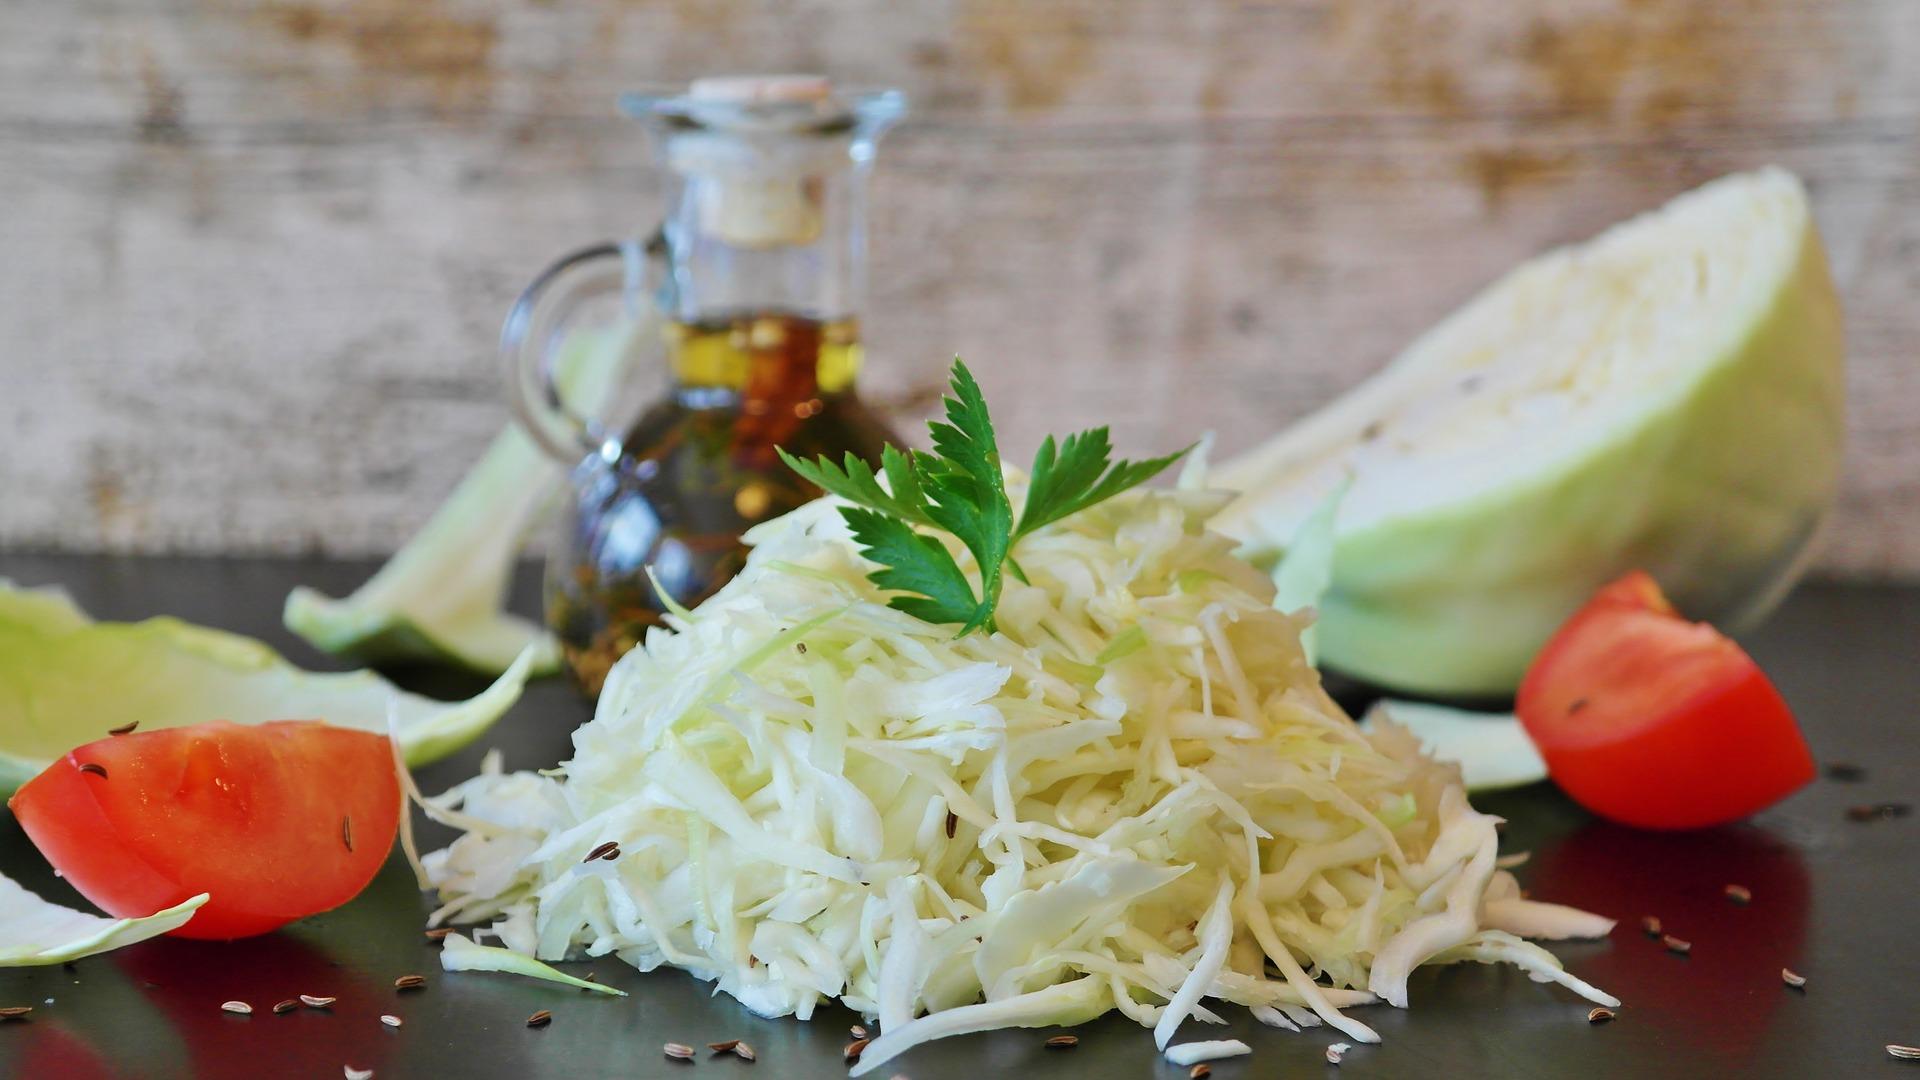 Die leckersten 5 Weißkohl-Salate für jede Jahreszeit - DIY-Family